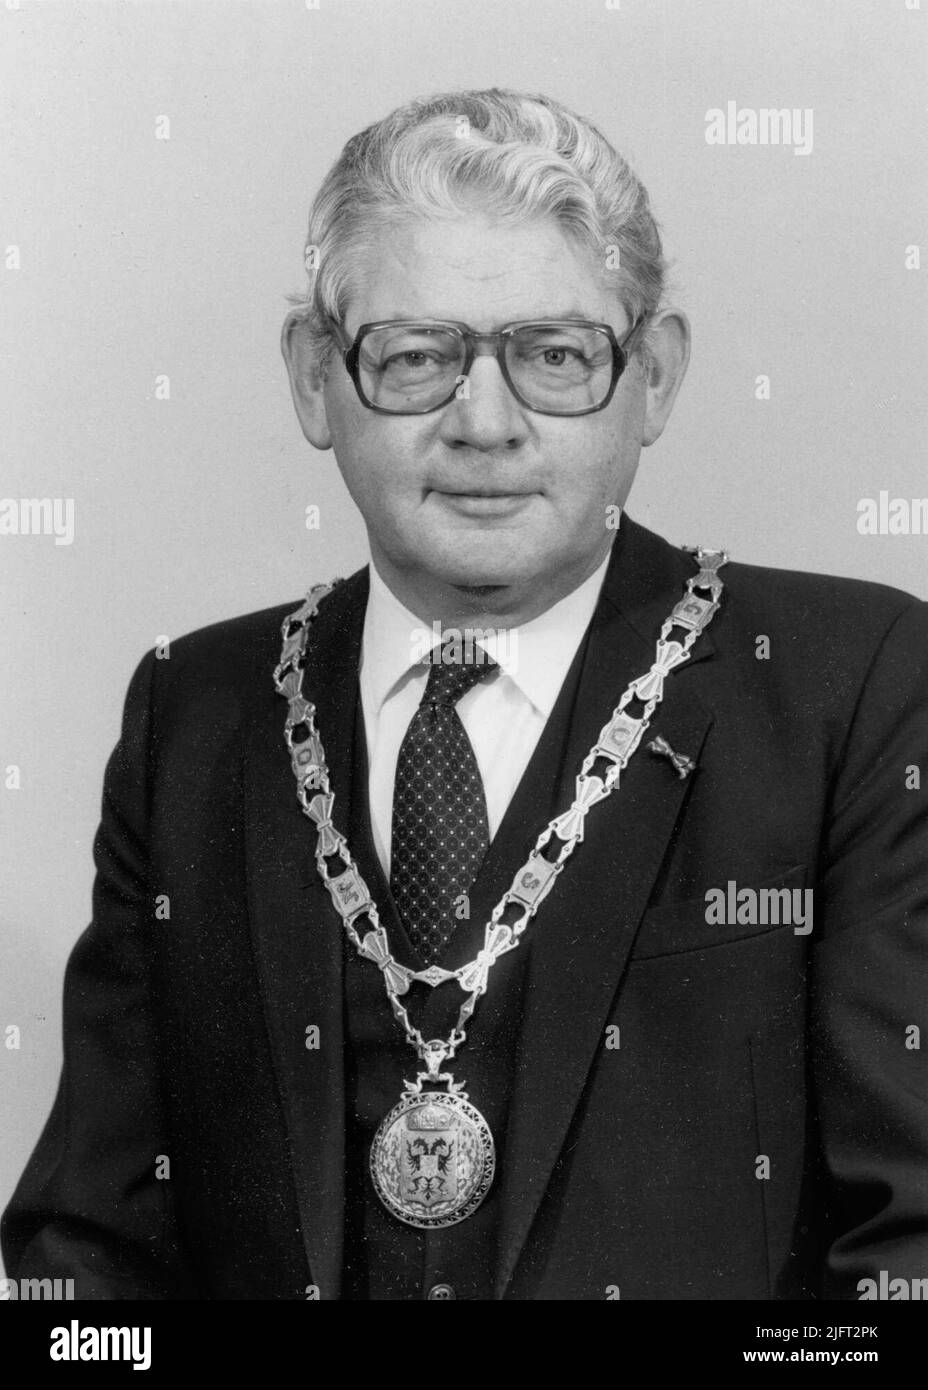 Porträt von Franciscus Johannes (französisch) Hermsen (10/09/1926 - 23/05/2003), Bürgermeister von Nijmegen von 1978 bis 1987 Stockfoto